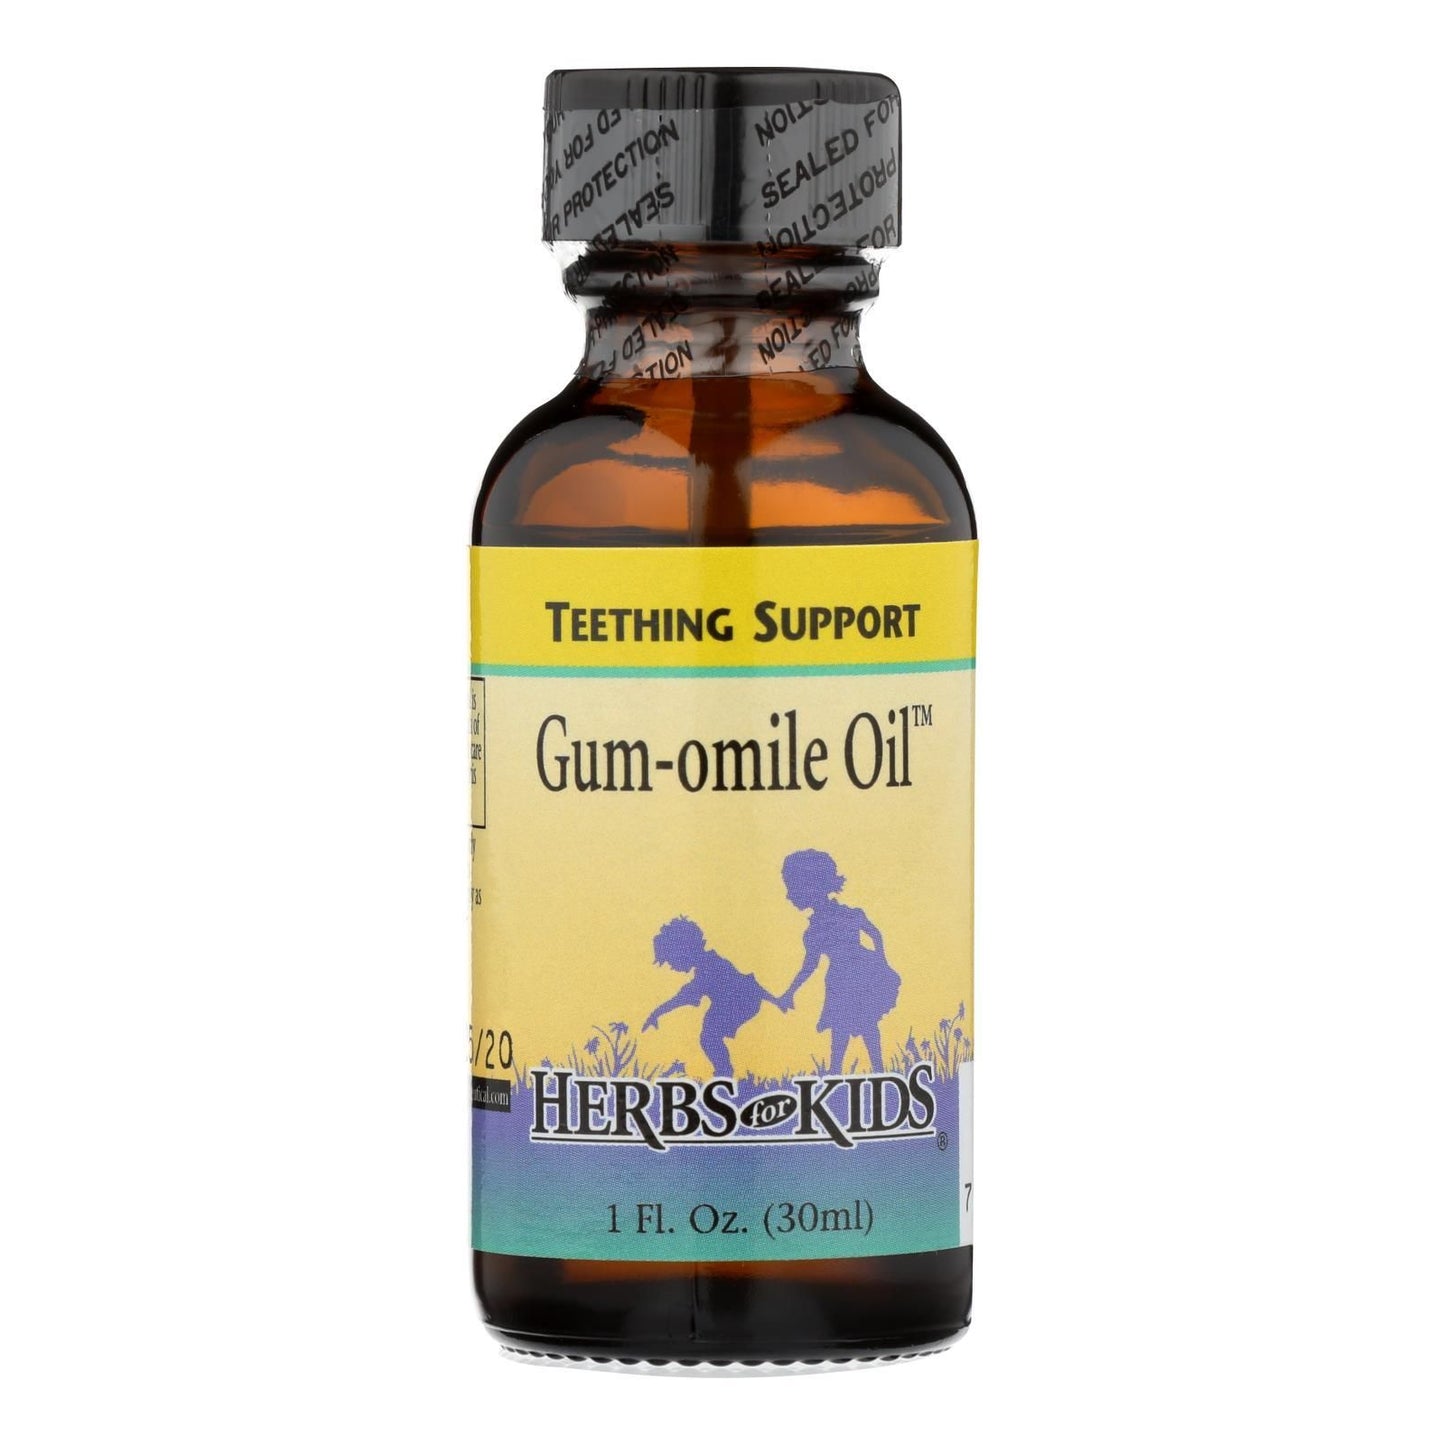 Gum-omile Oil